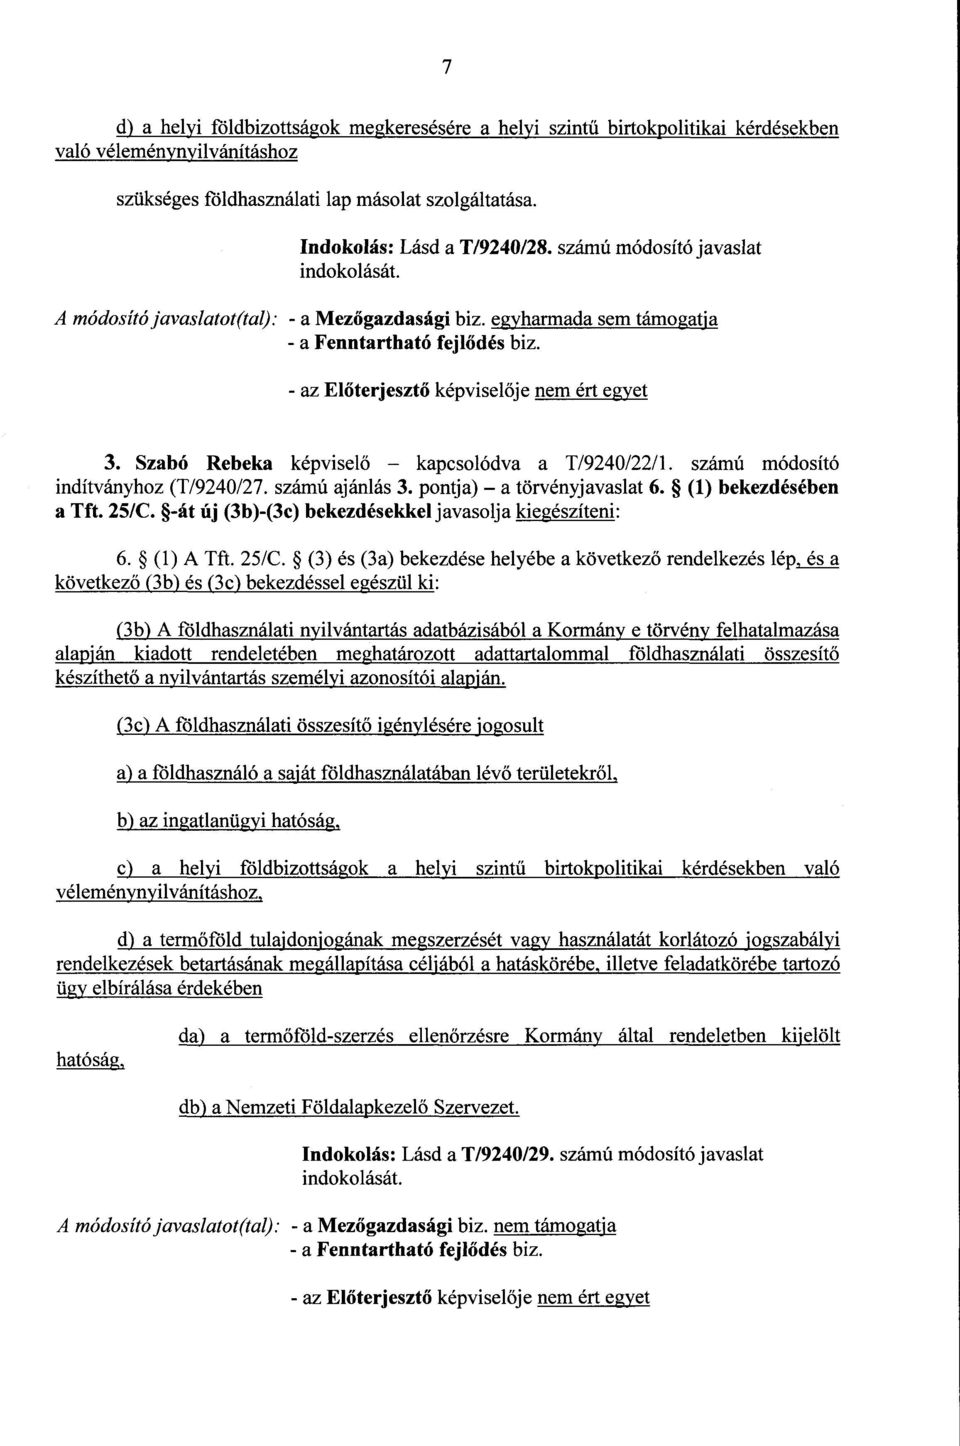 Szabó Rebeka képviselő kapcsolódva a T/9240/22/1. számú módosító indítványhoz (T/9240/27. számú ajánlás 3. pontja) a törvényjavaslat 6. (1) bekezdésébe n a Tft. 25/C.